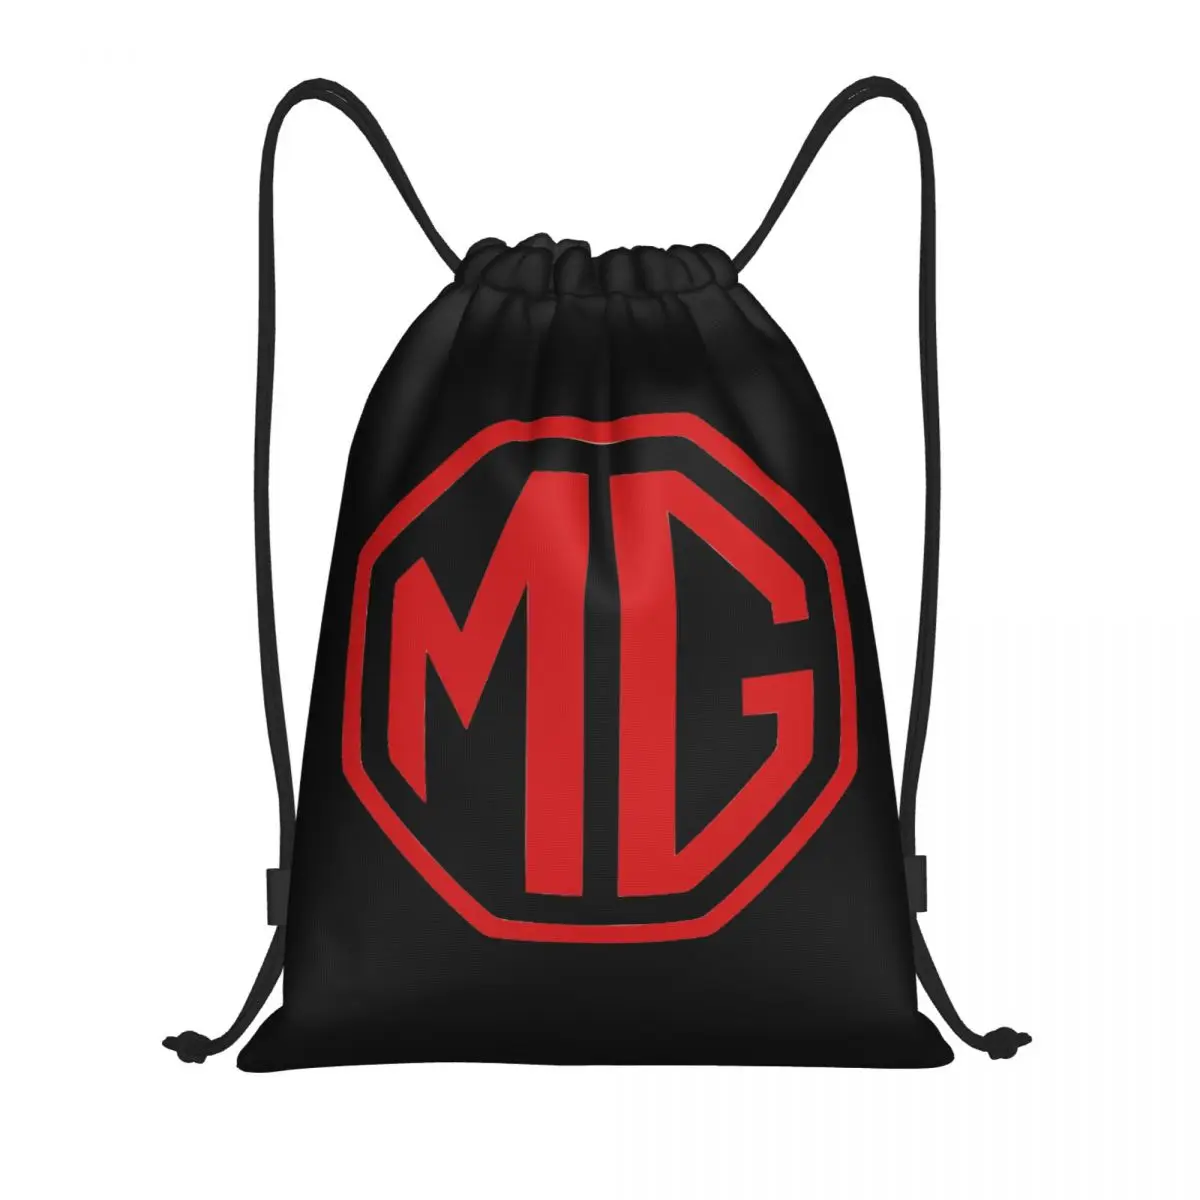 Рюкзак с логотипом MG, спортивный рюкзак для спортзала, авоськи для велоспорта